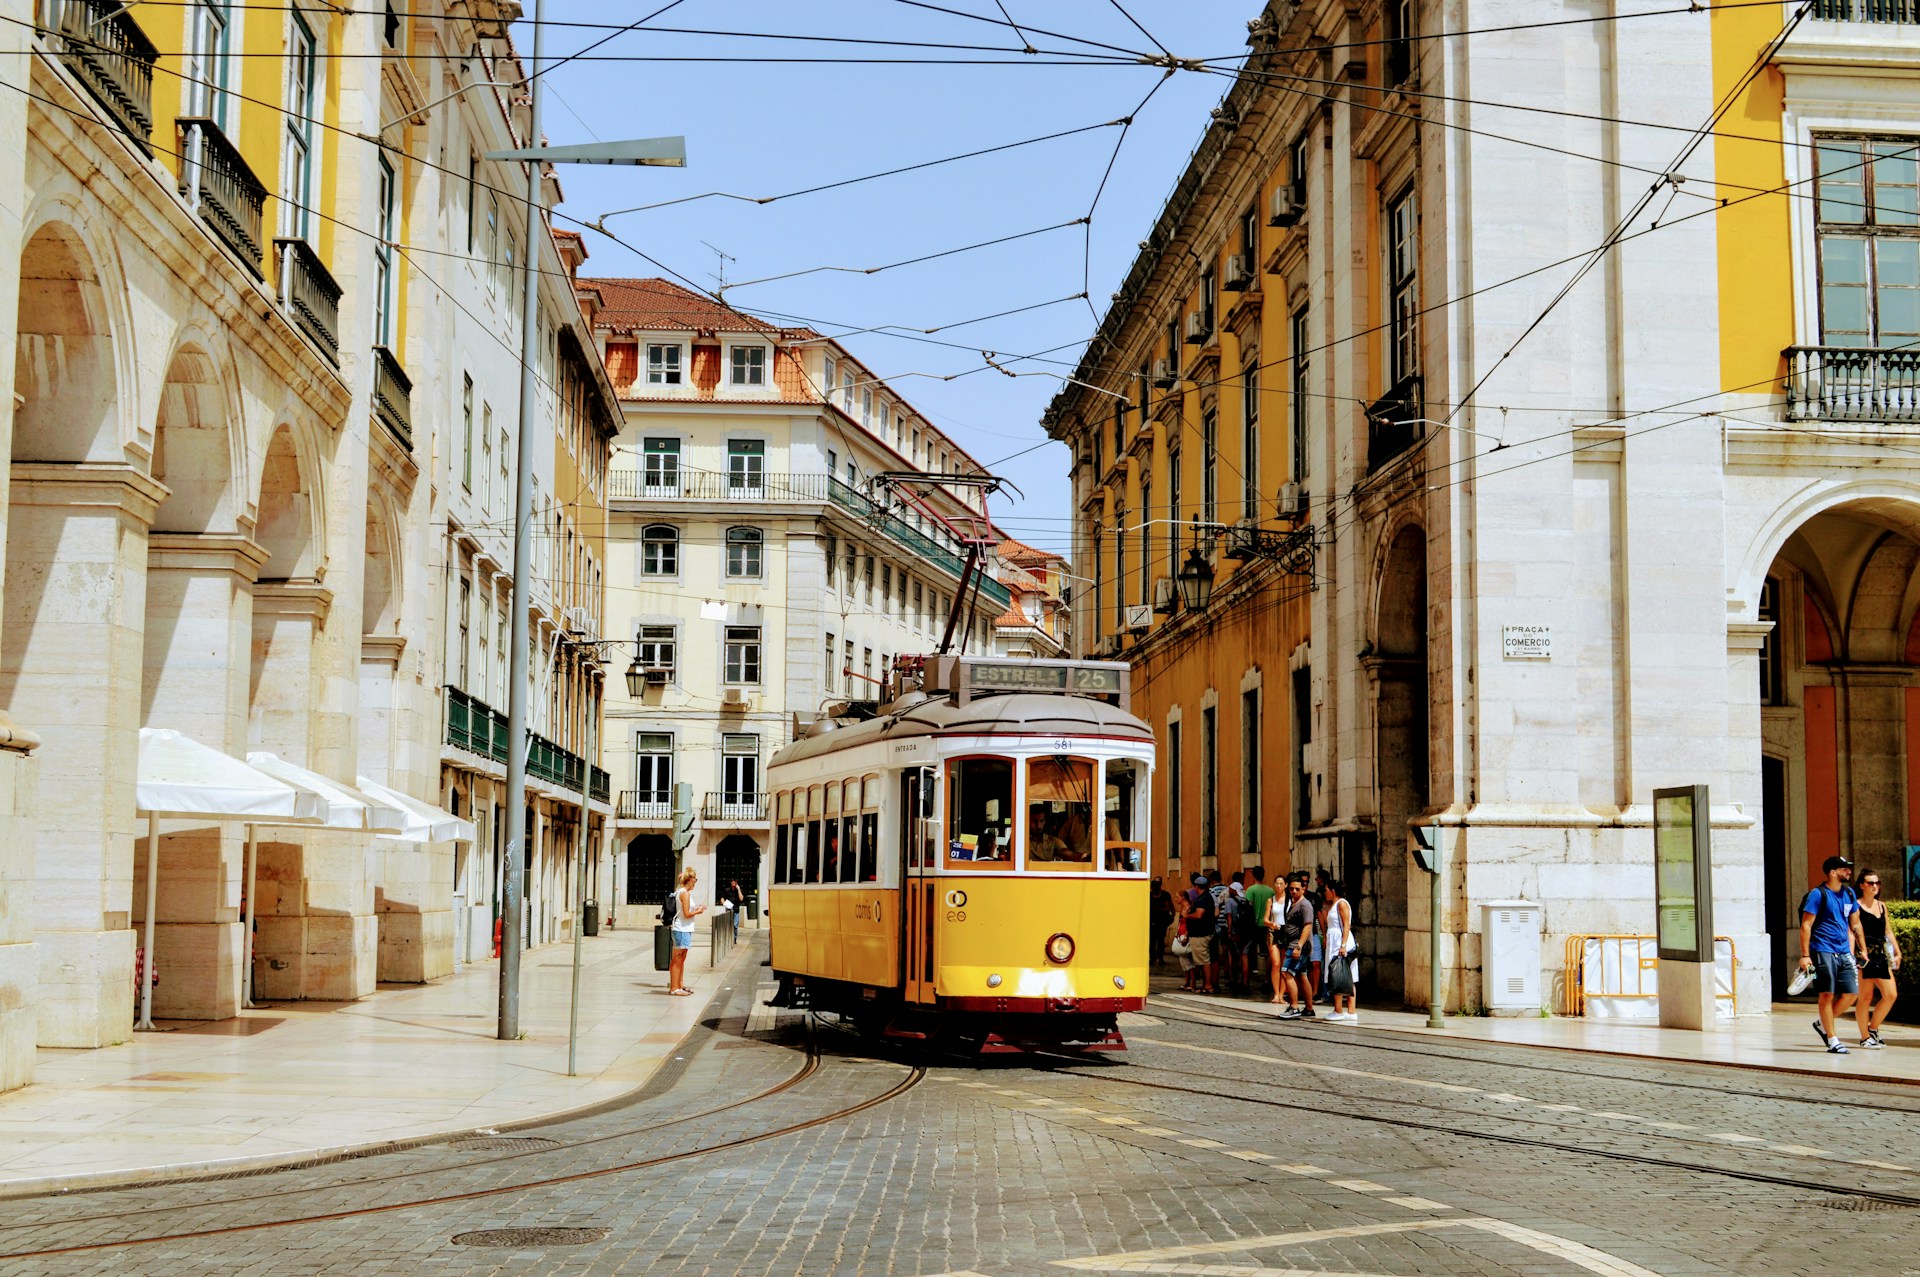 DIG-IN PRO: 5 Sugestões para todas as ocasiões – Lisboa